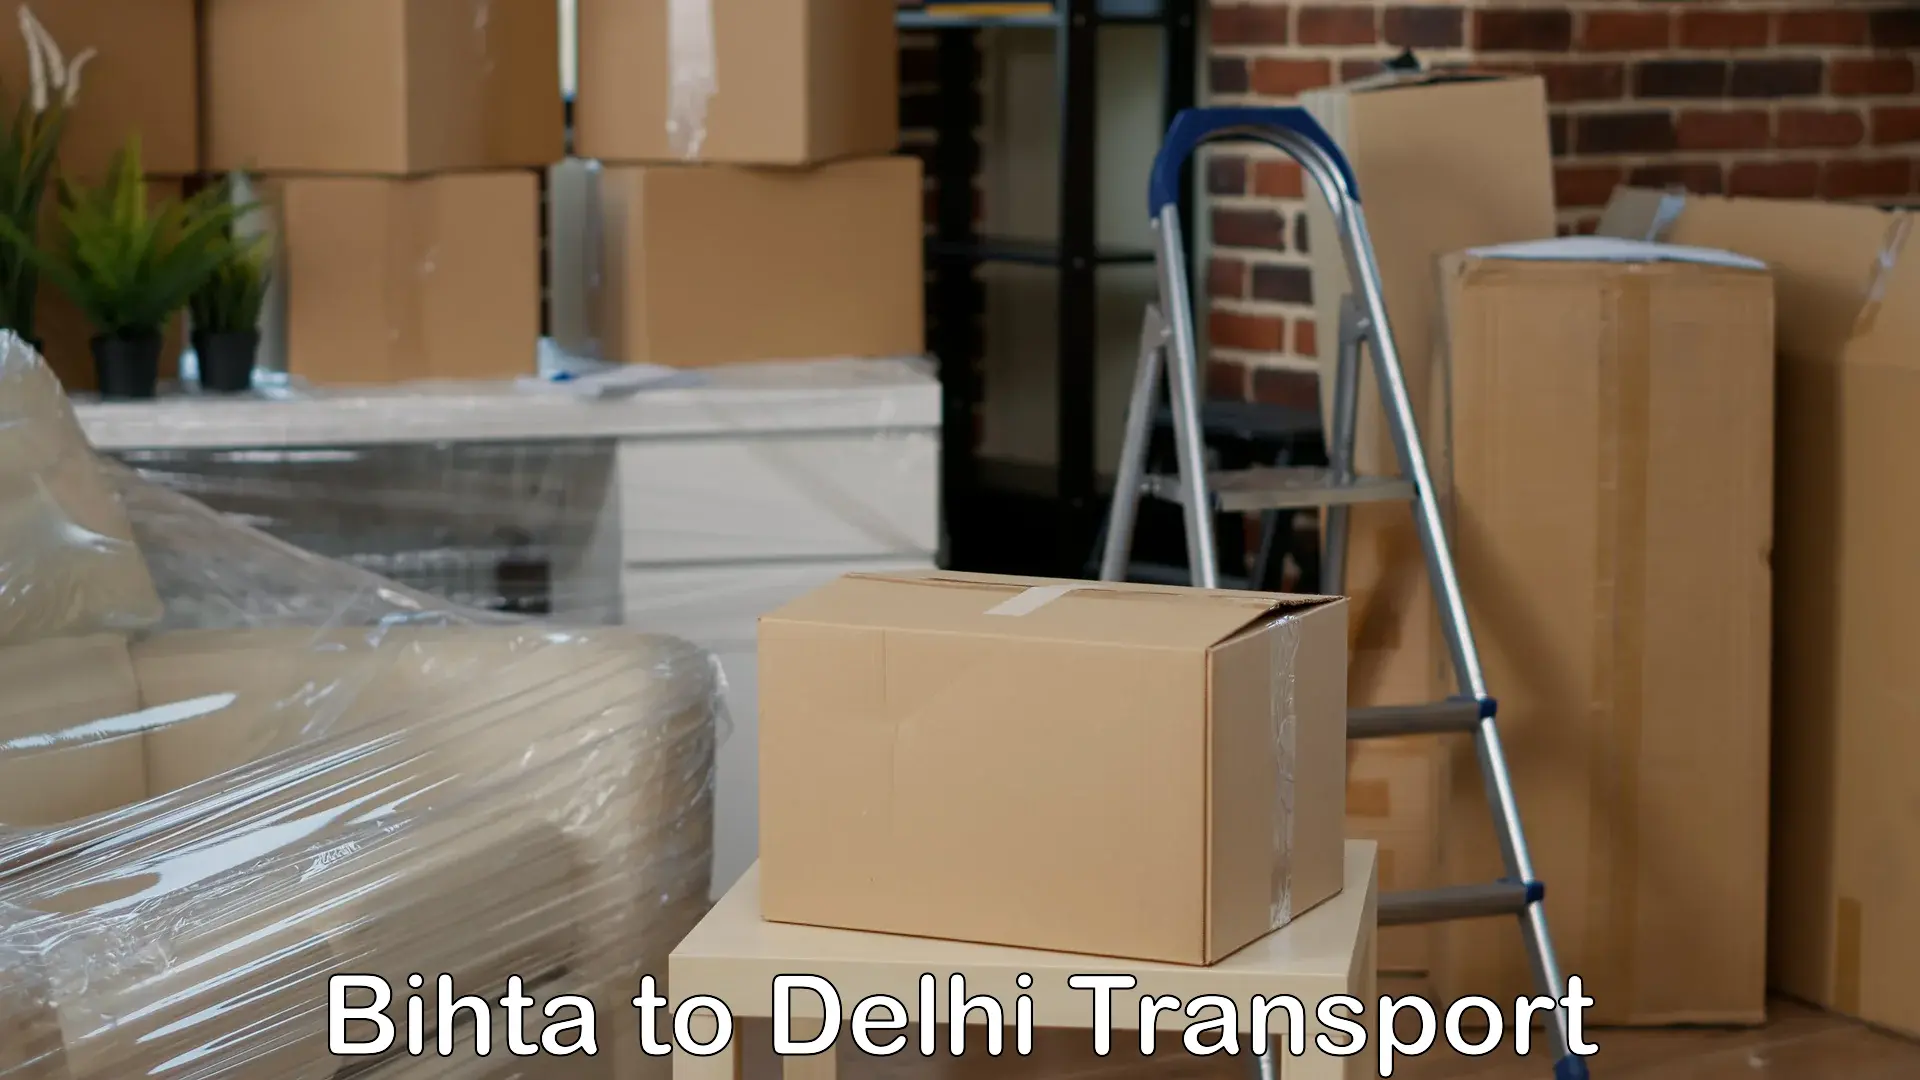 Domestic transport services Bihta to Kalkaji